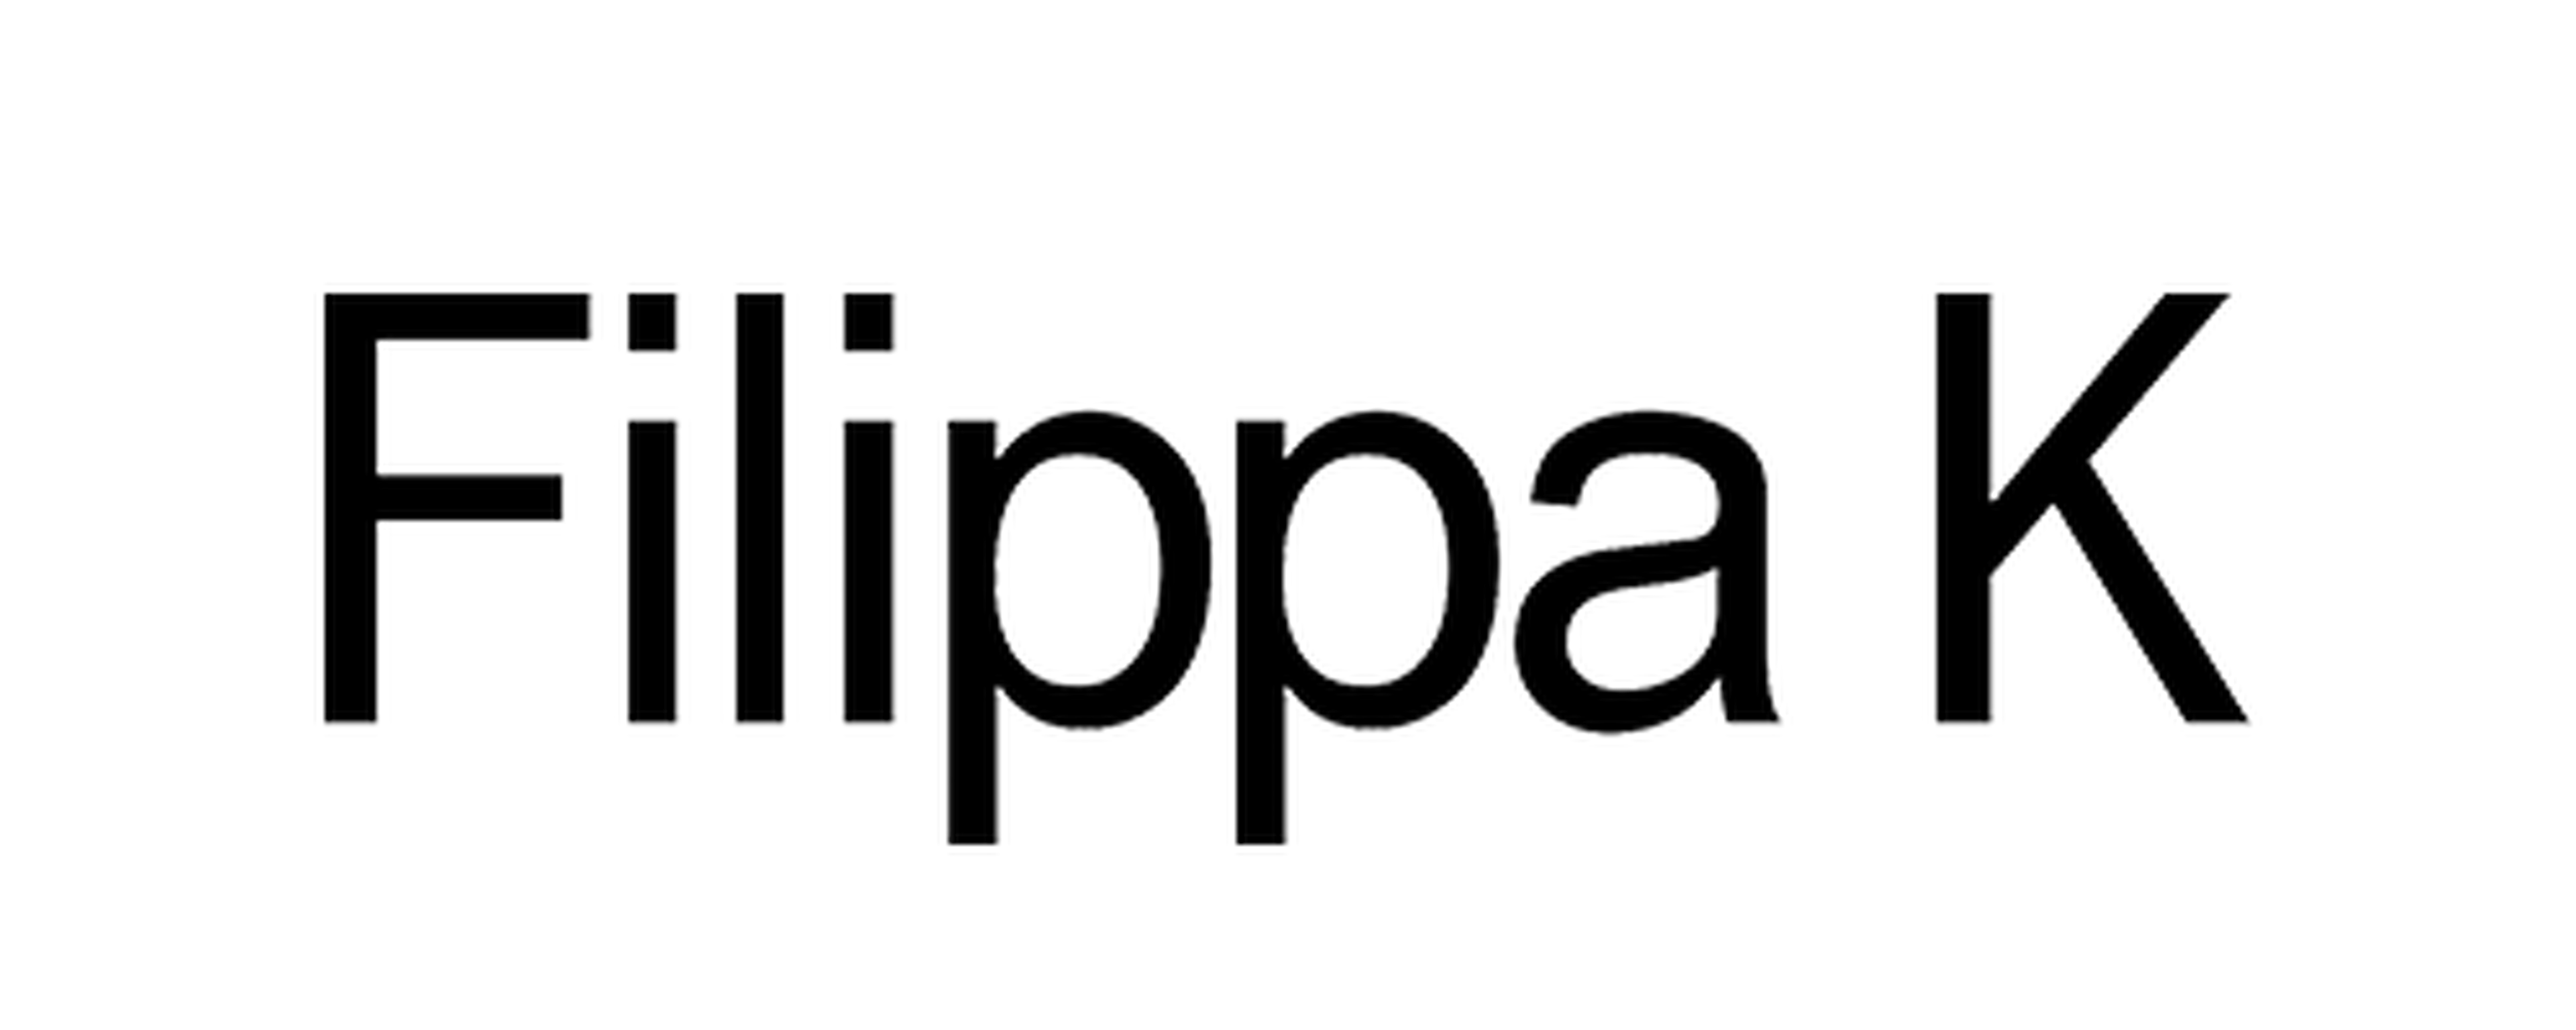 Filippa K logotype